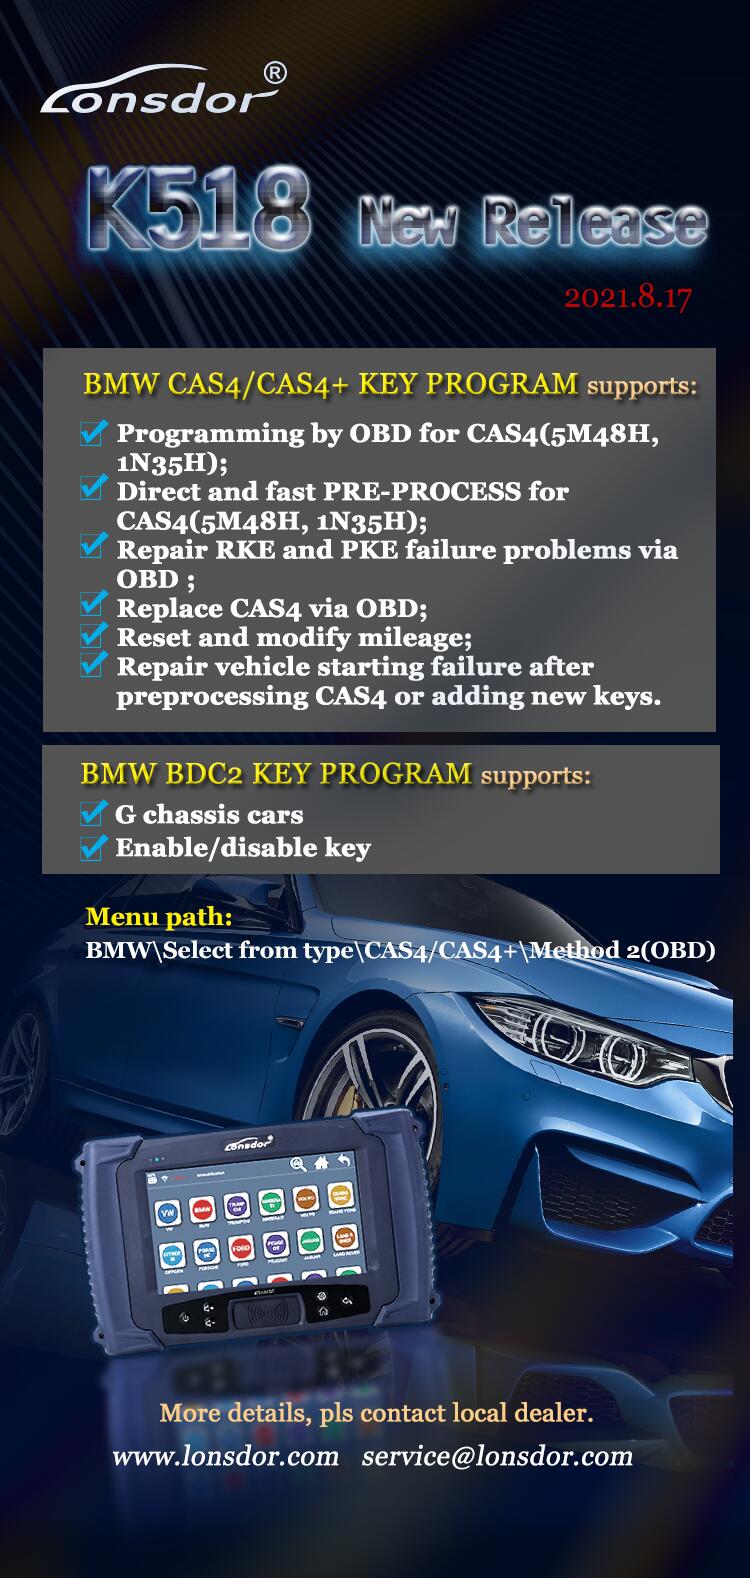 Lonsdor K518 BMW model upgrade information